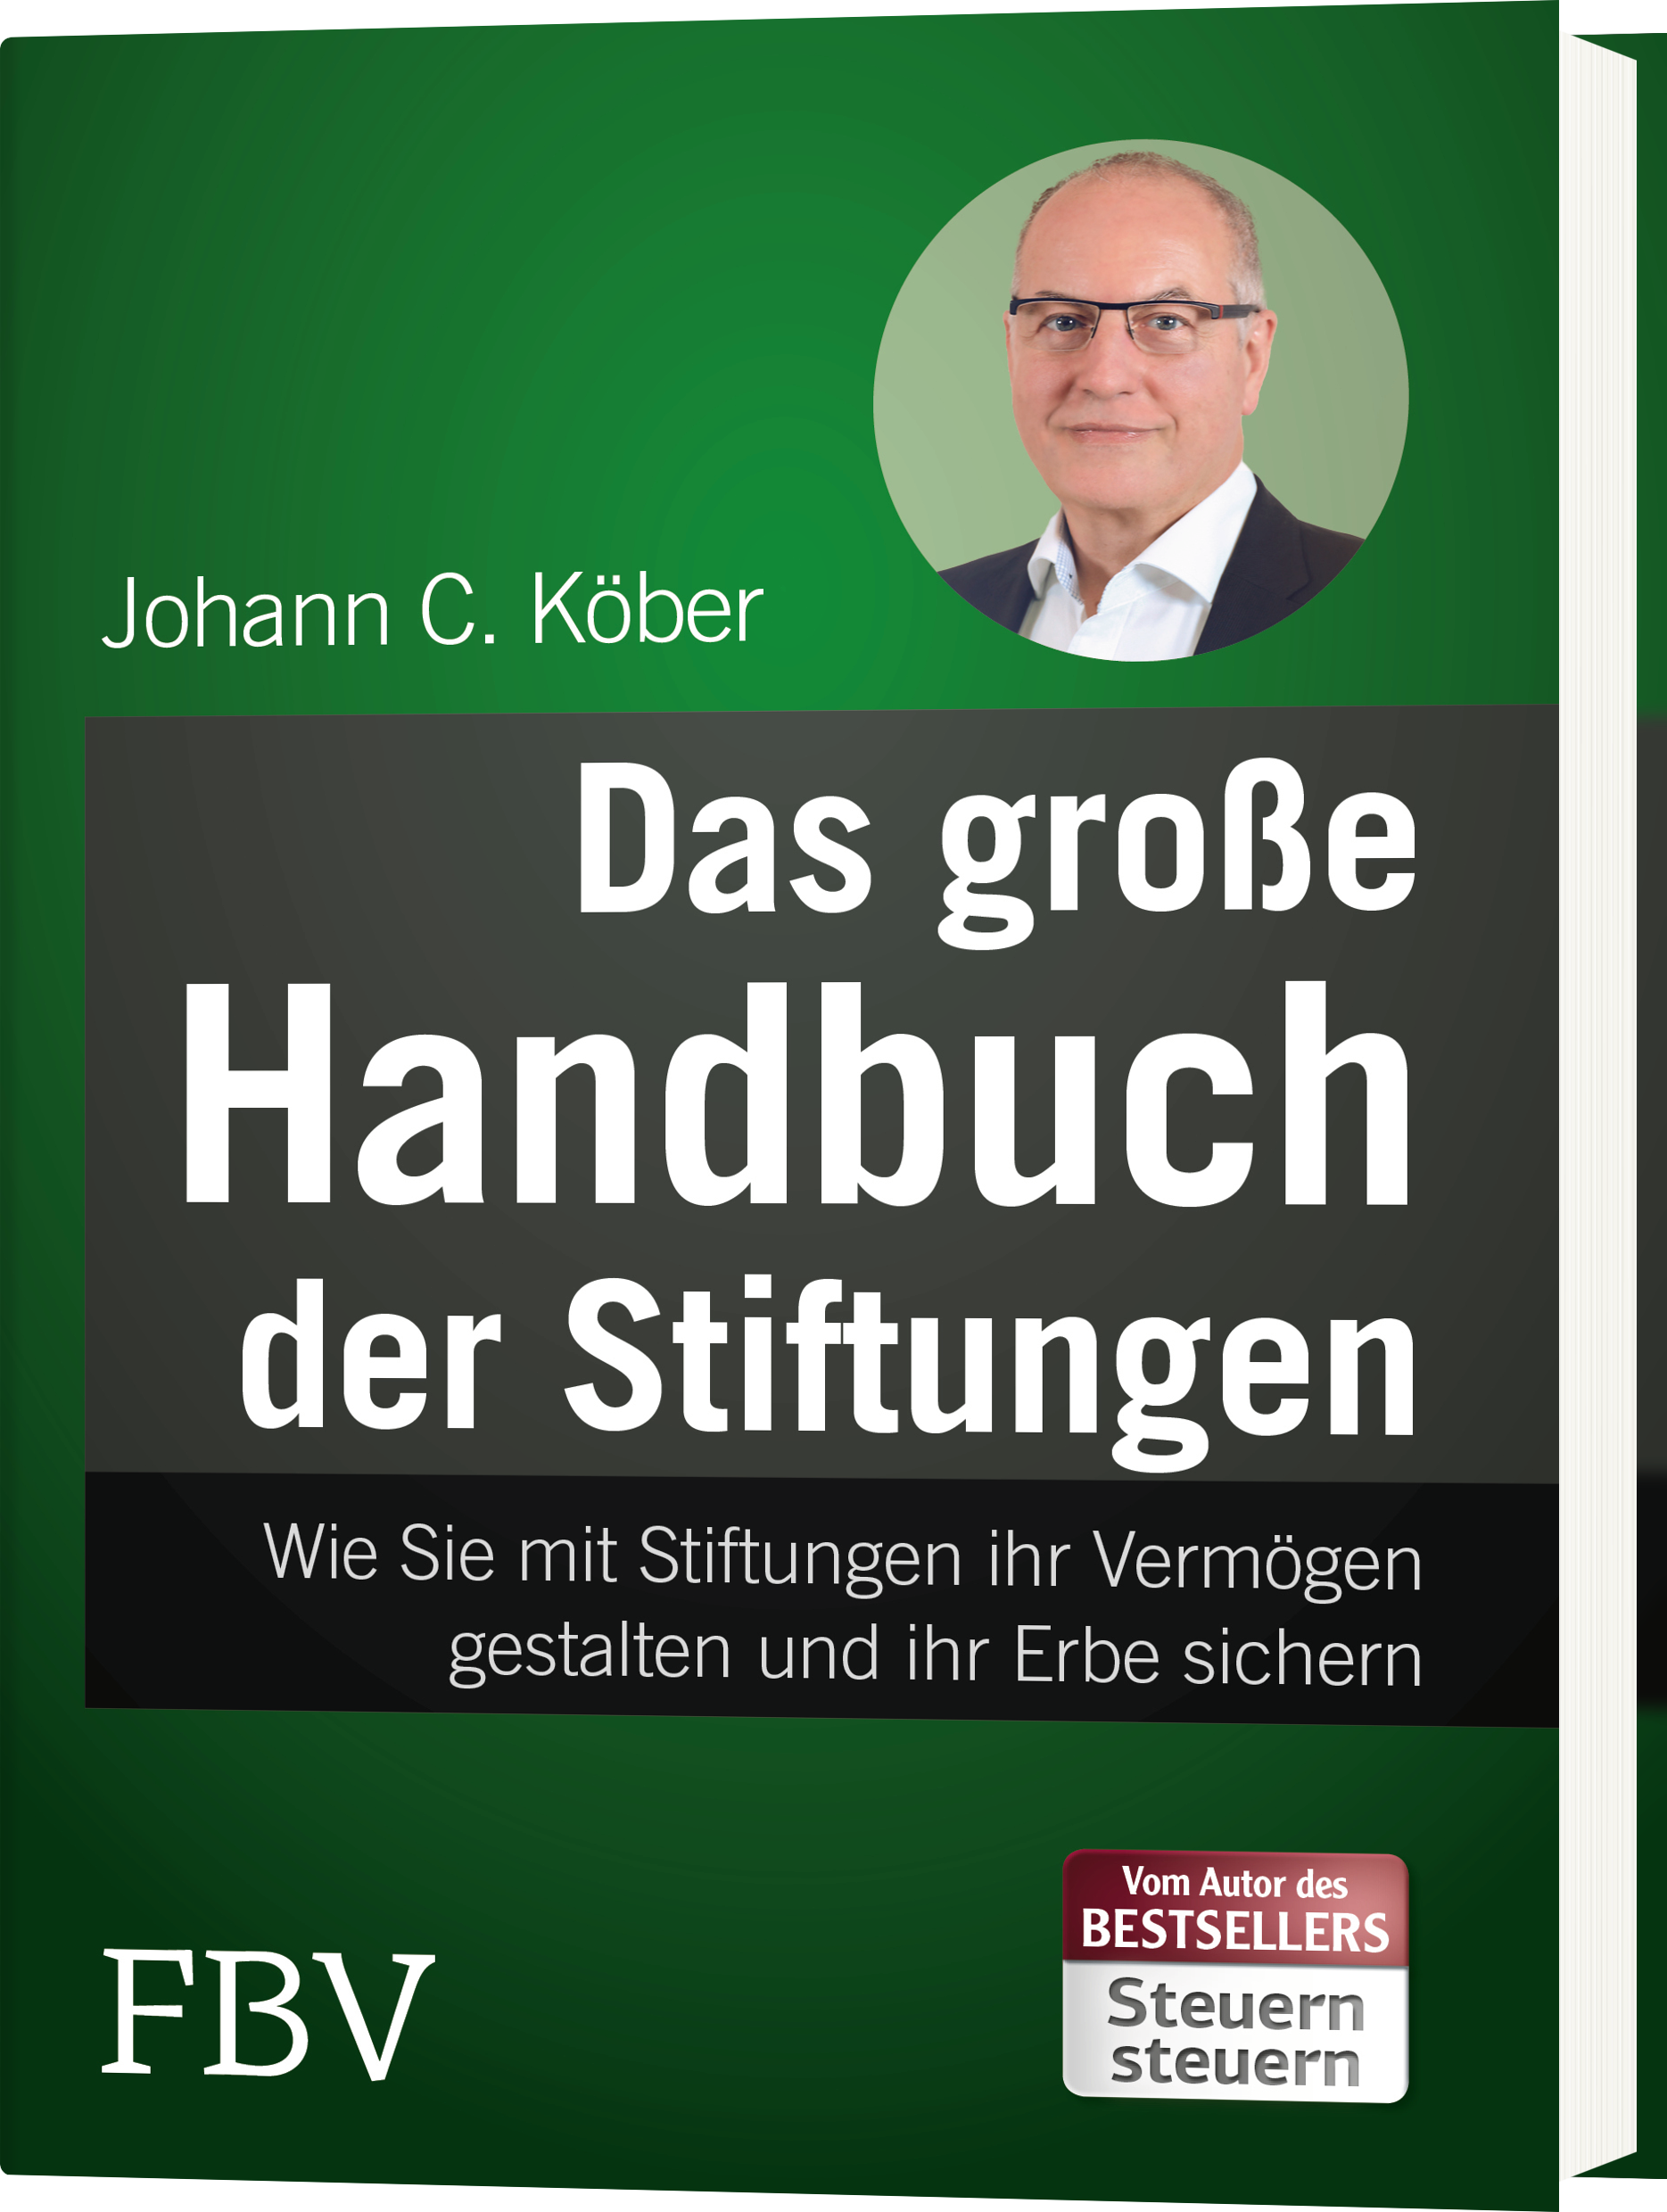 Das große Handbuch der Stiftungen Wie Sie it Stiftungen Ihr Verögen
gestalten und Ihr Erbe sichern PDF Epub-Ebook